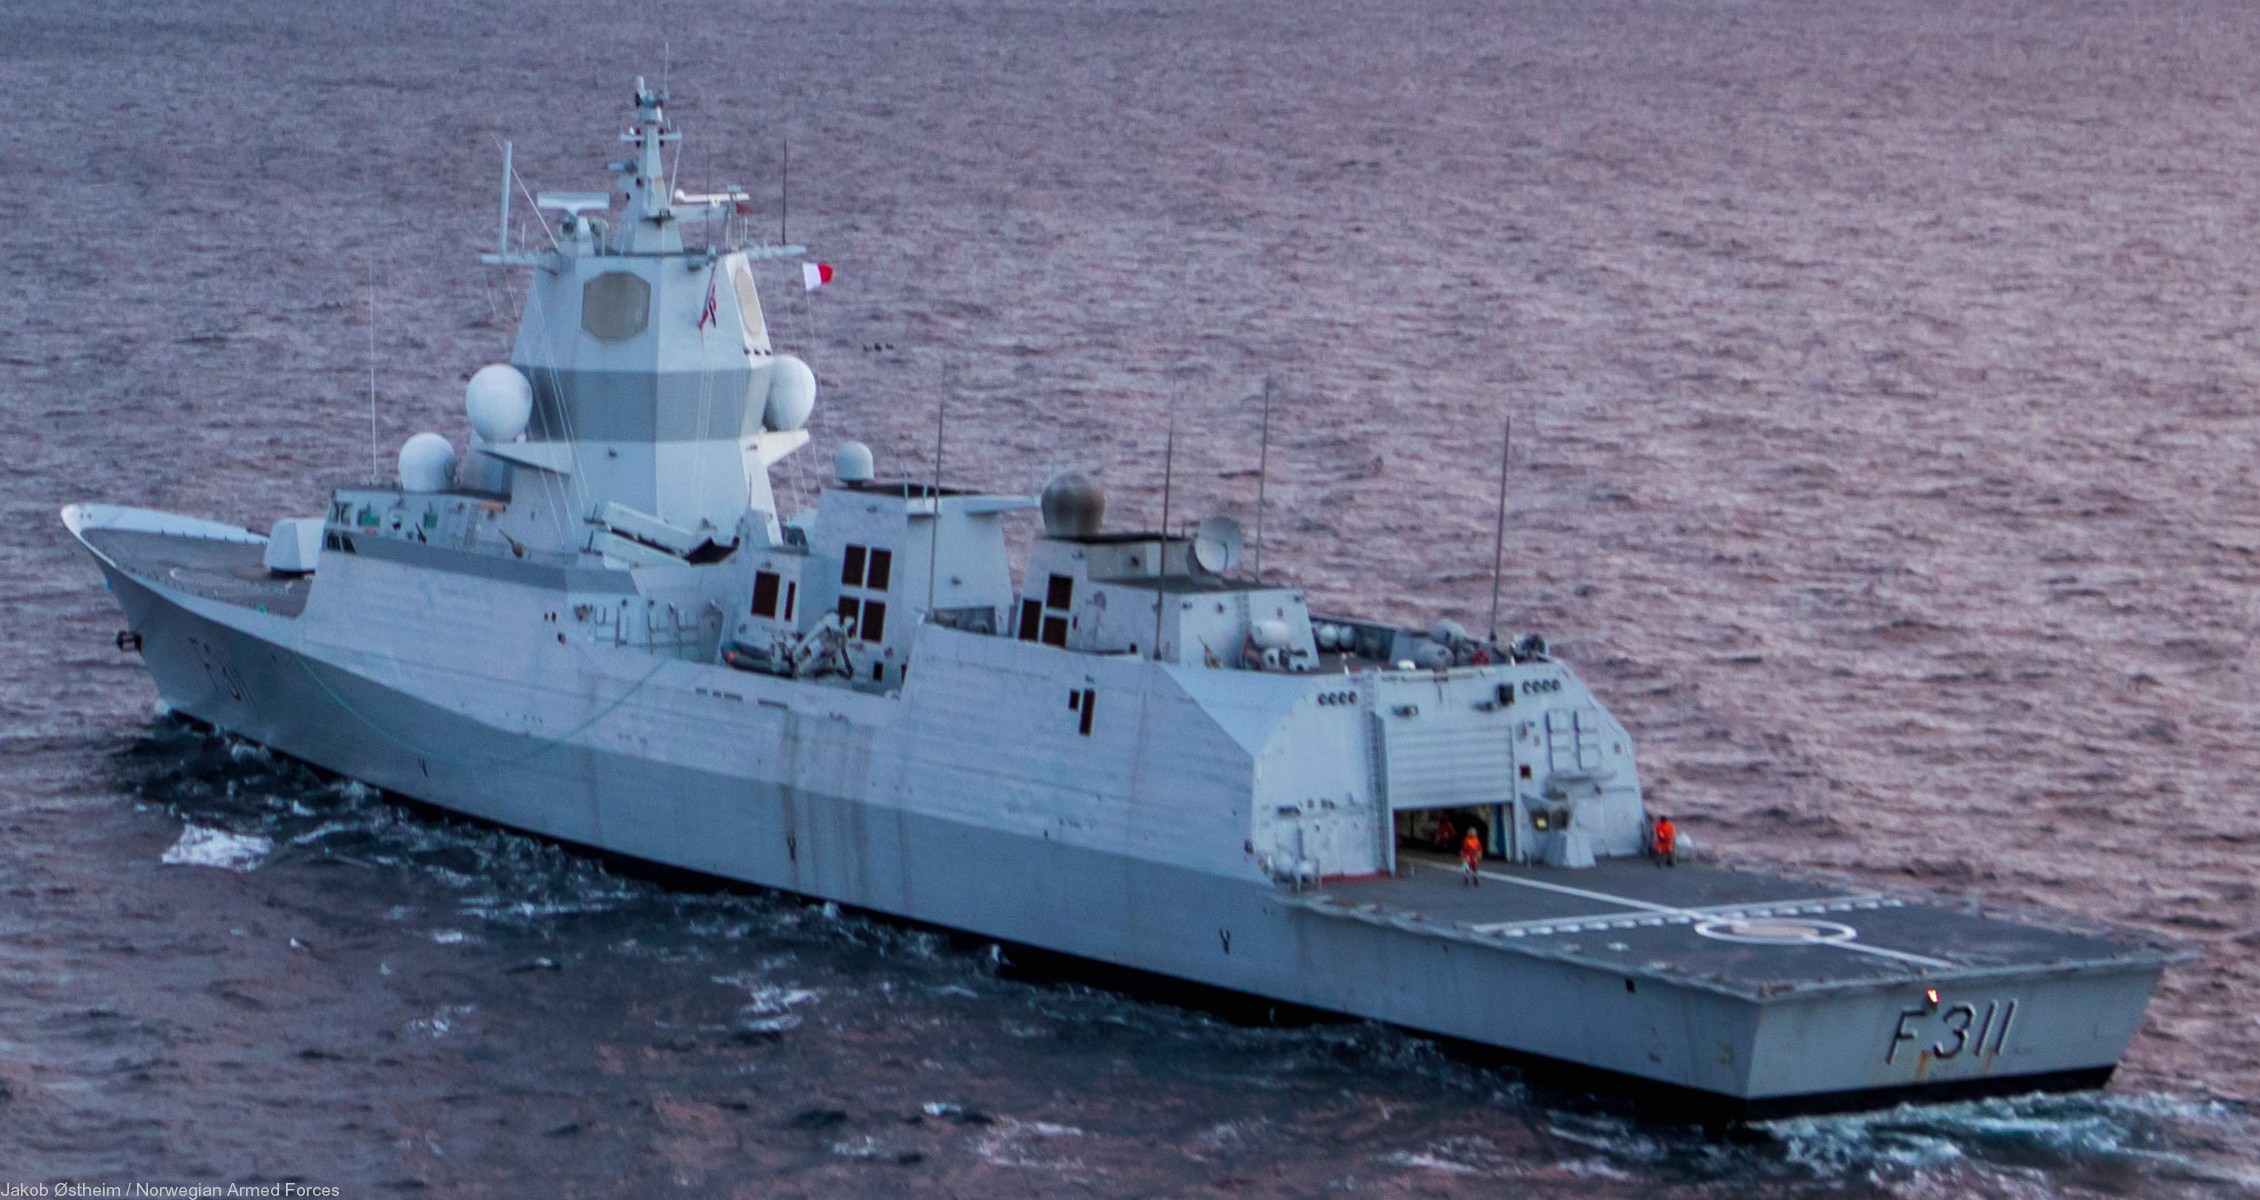 f-311 hnoms roald amundsen knm nansen class frigate royal norwegian navy sjoforsvaret 53